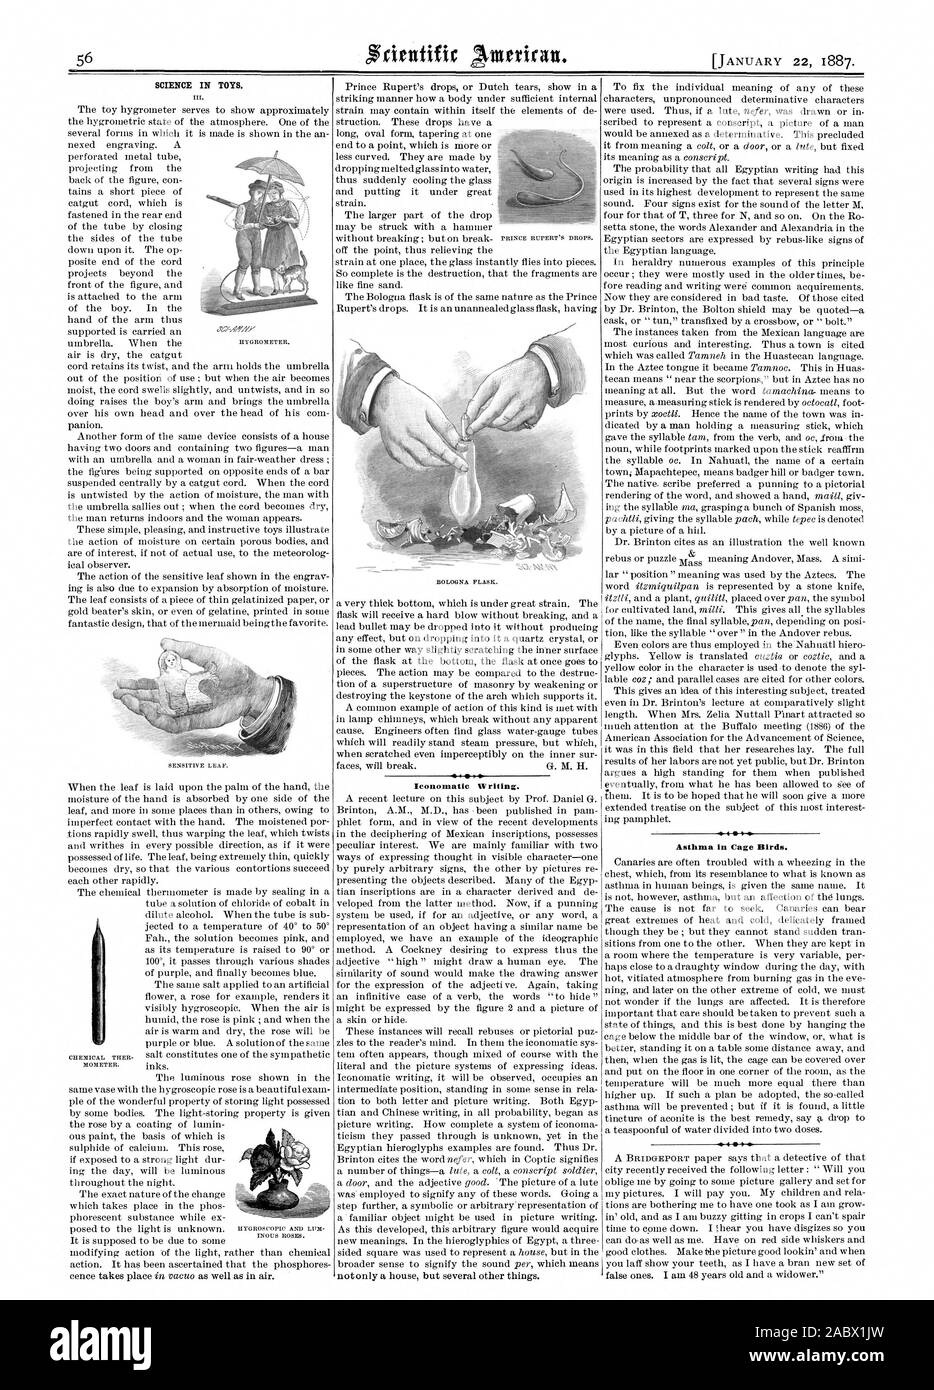 La ciencia en los juguetes. Iconomatie escrito. El asma en los pájaros de jaula, Scientific American, 1887-01-22 Foto de stock